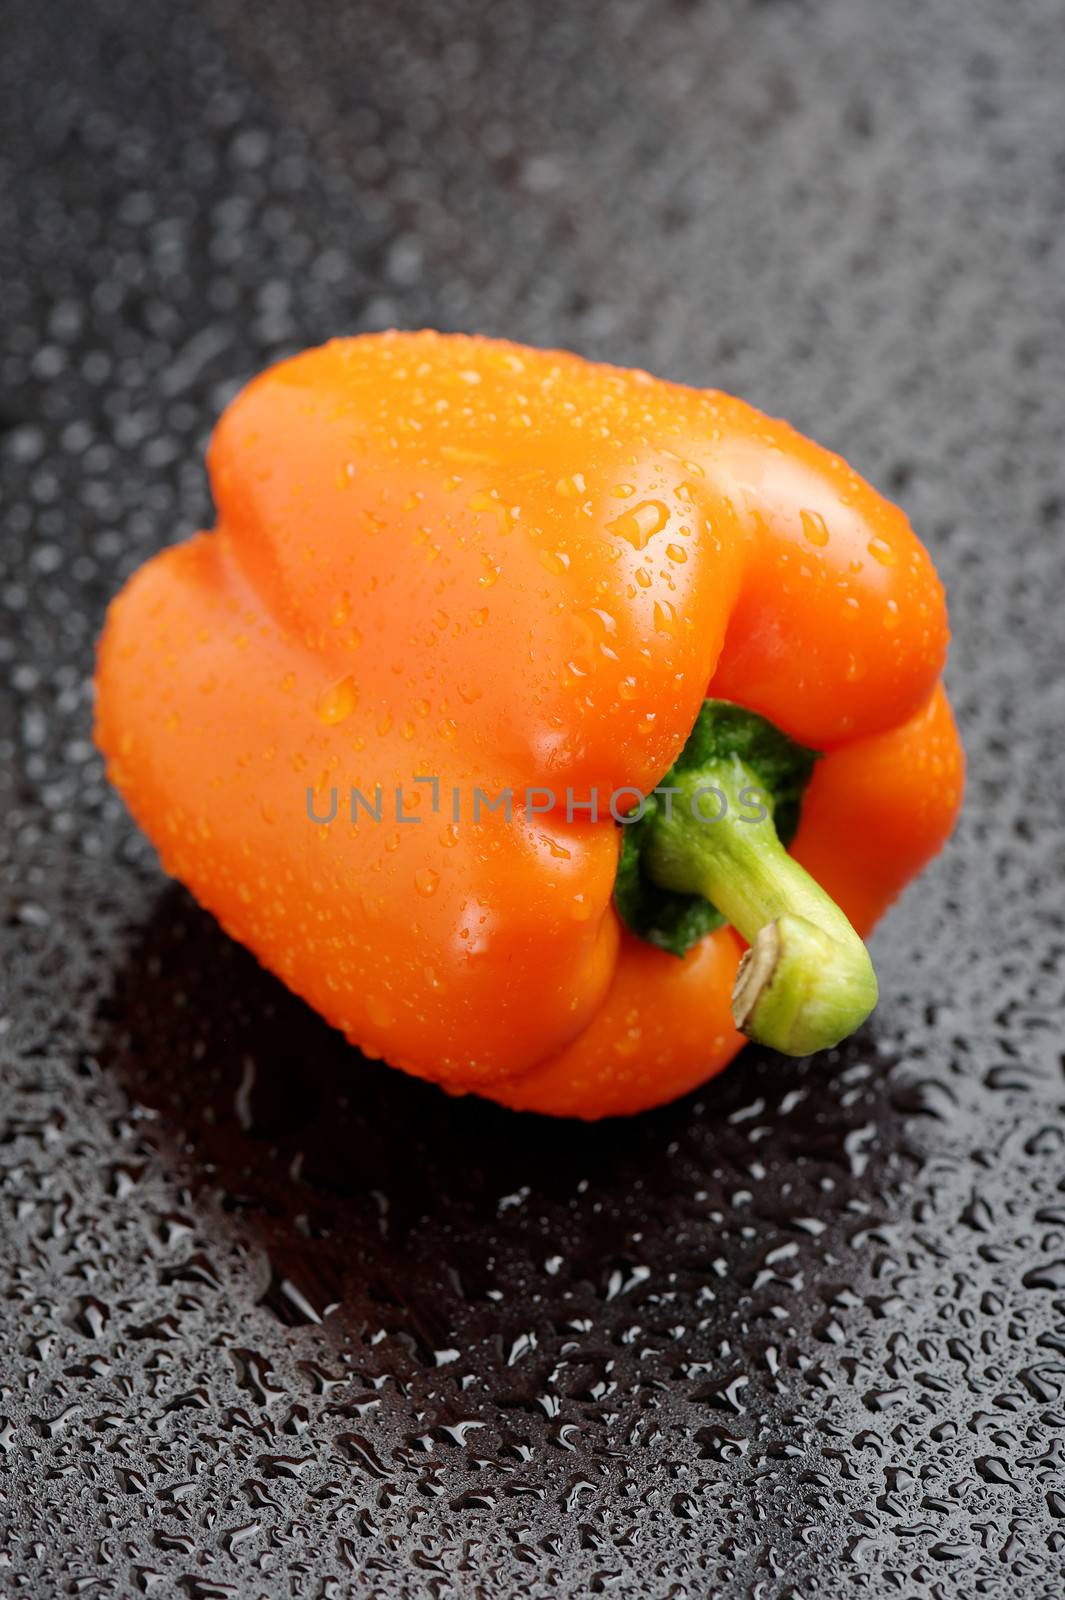 Orange bell pepper by Viktorus